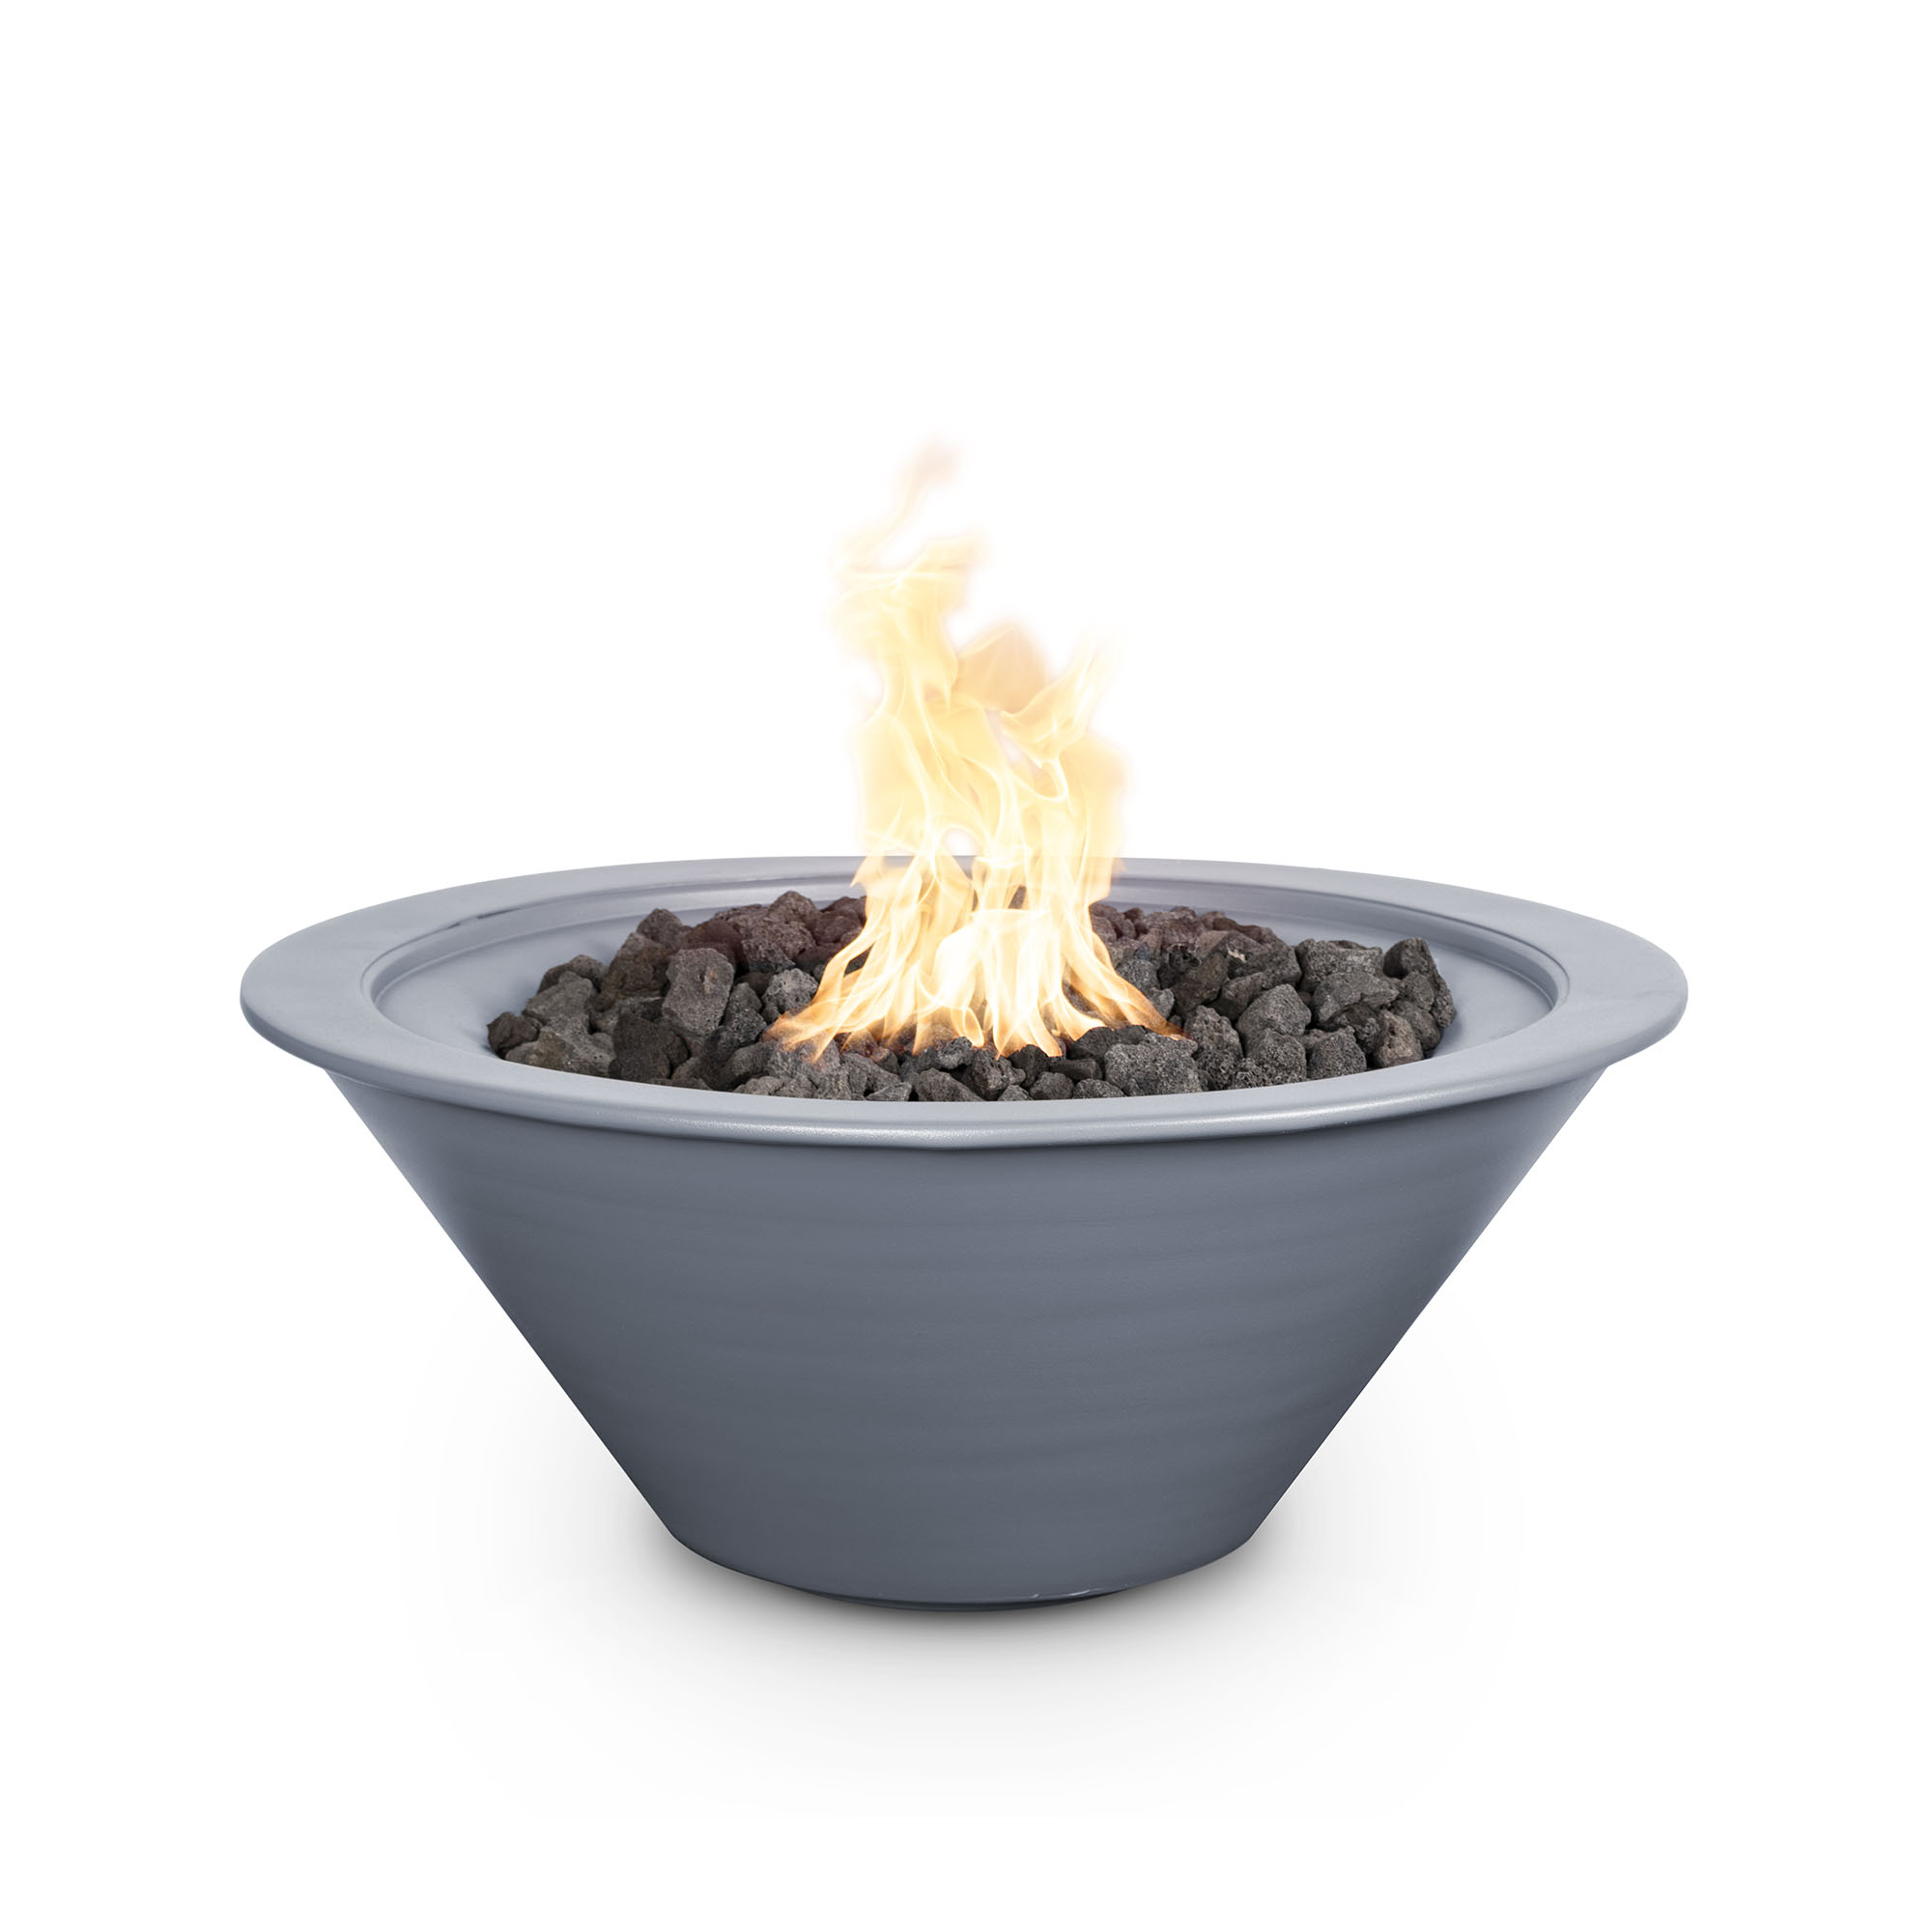 Cazo Powder Coated Fire Bowl - Gray